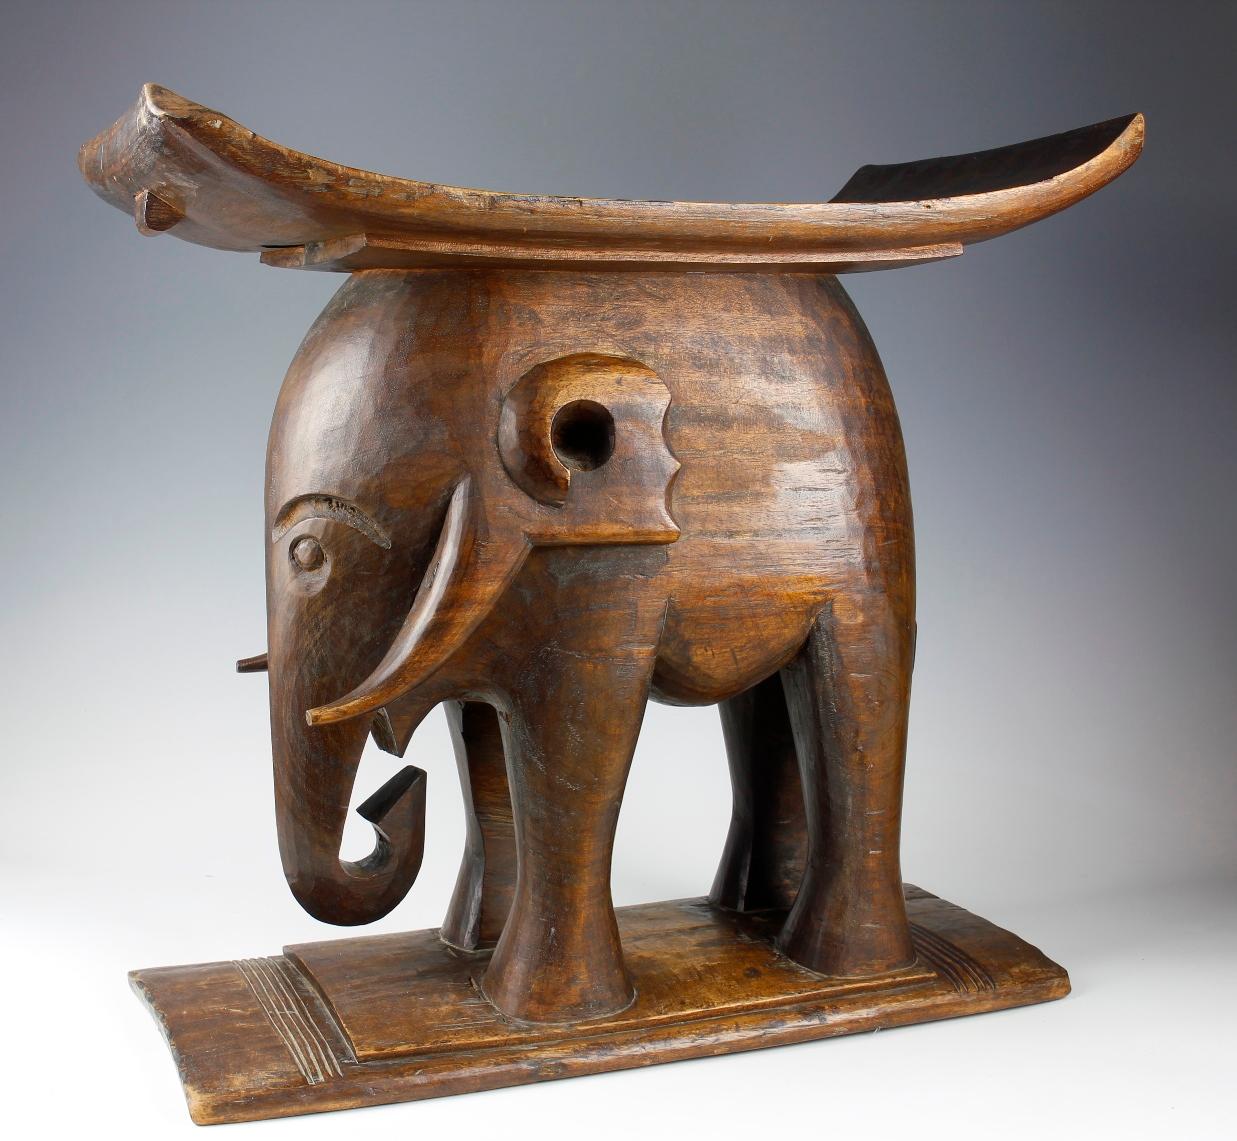 Ce tabouret ancien de la culture ashanti du Ghana représente un éléphant, symbole ashanti de puissance et de force. Sculpté dans un bois brun lourd, ce grand tabouret impressionnant avait une signification spirituelle en plus de son utilisation